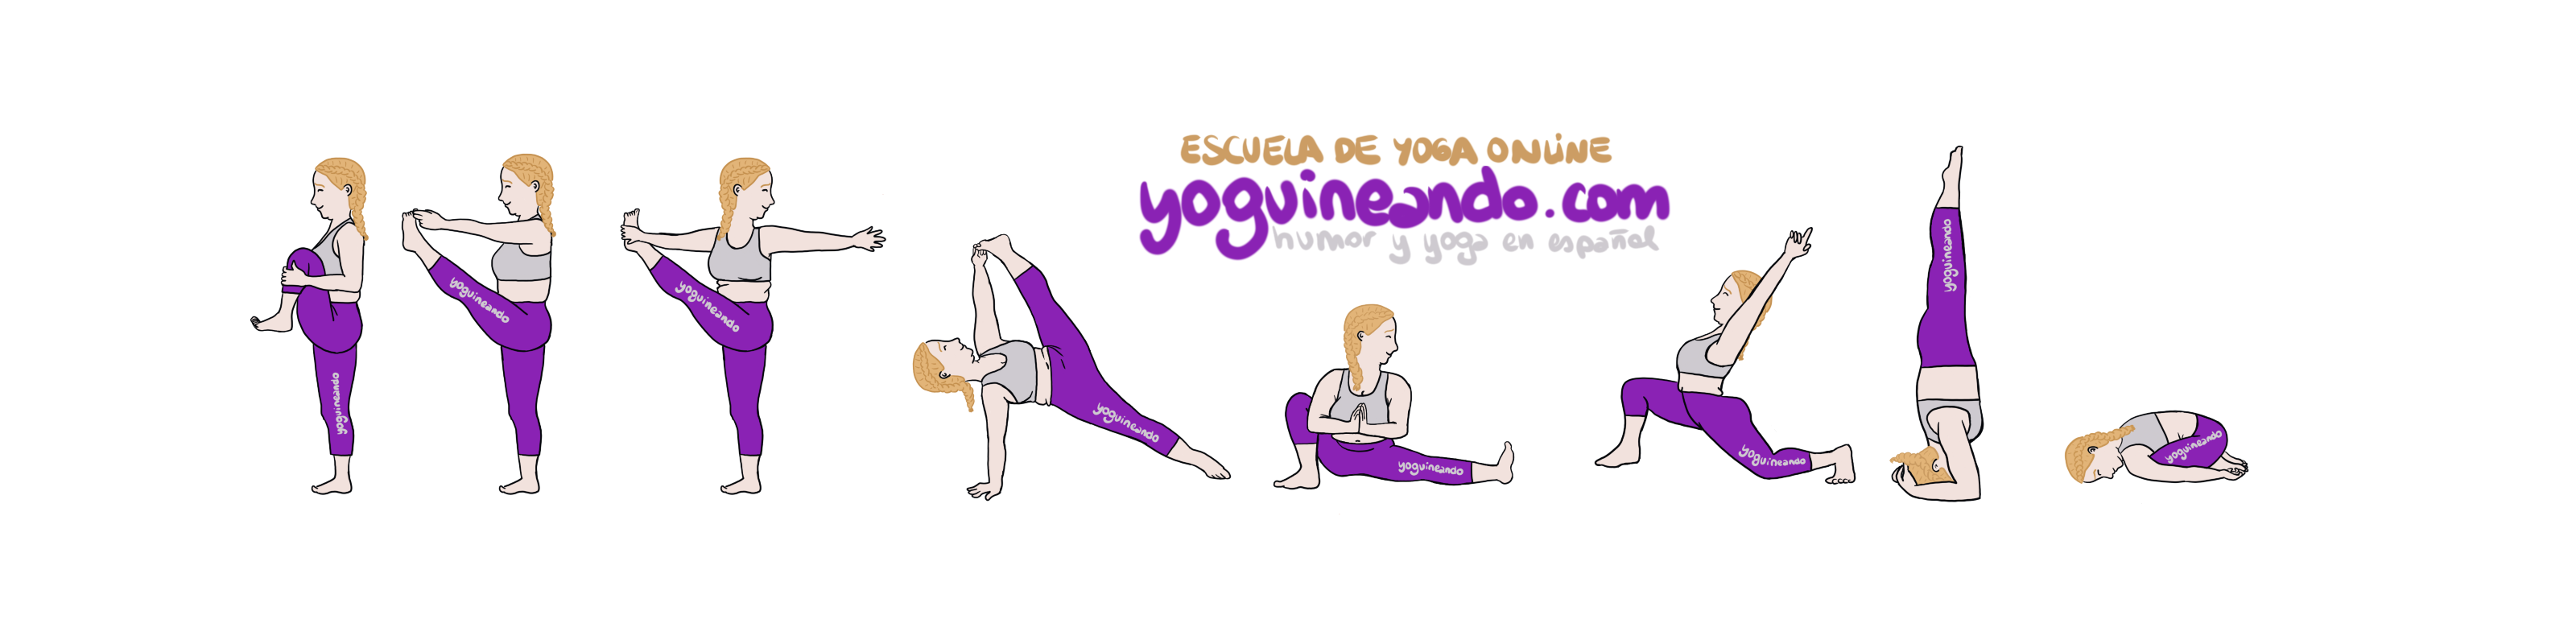 escuela online yoguineando